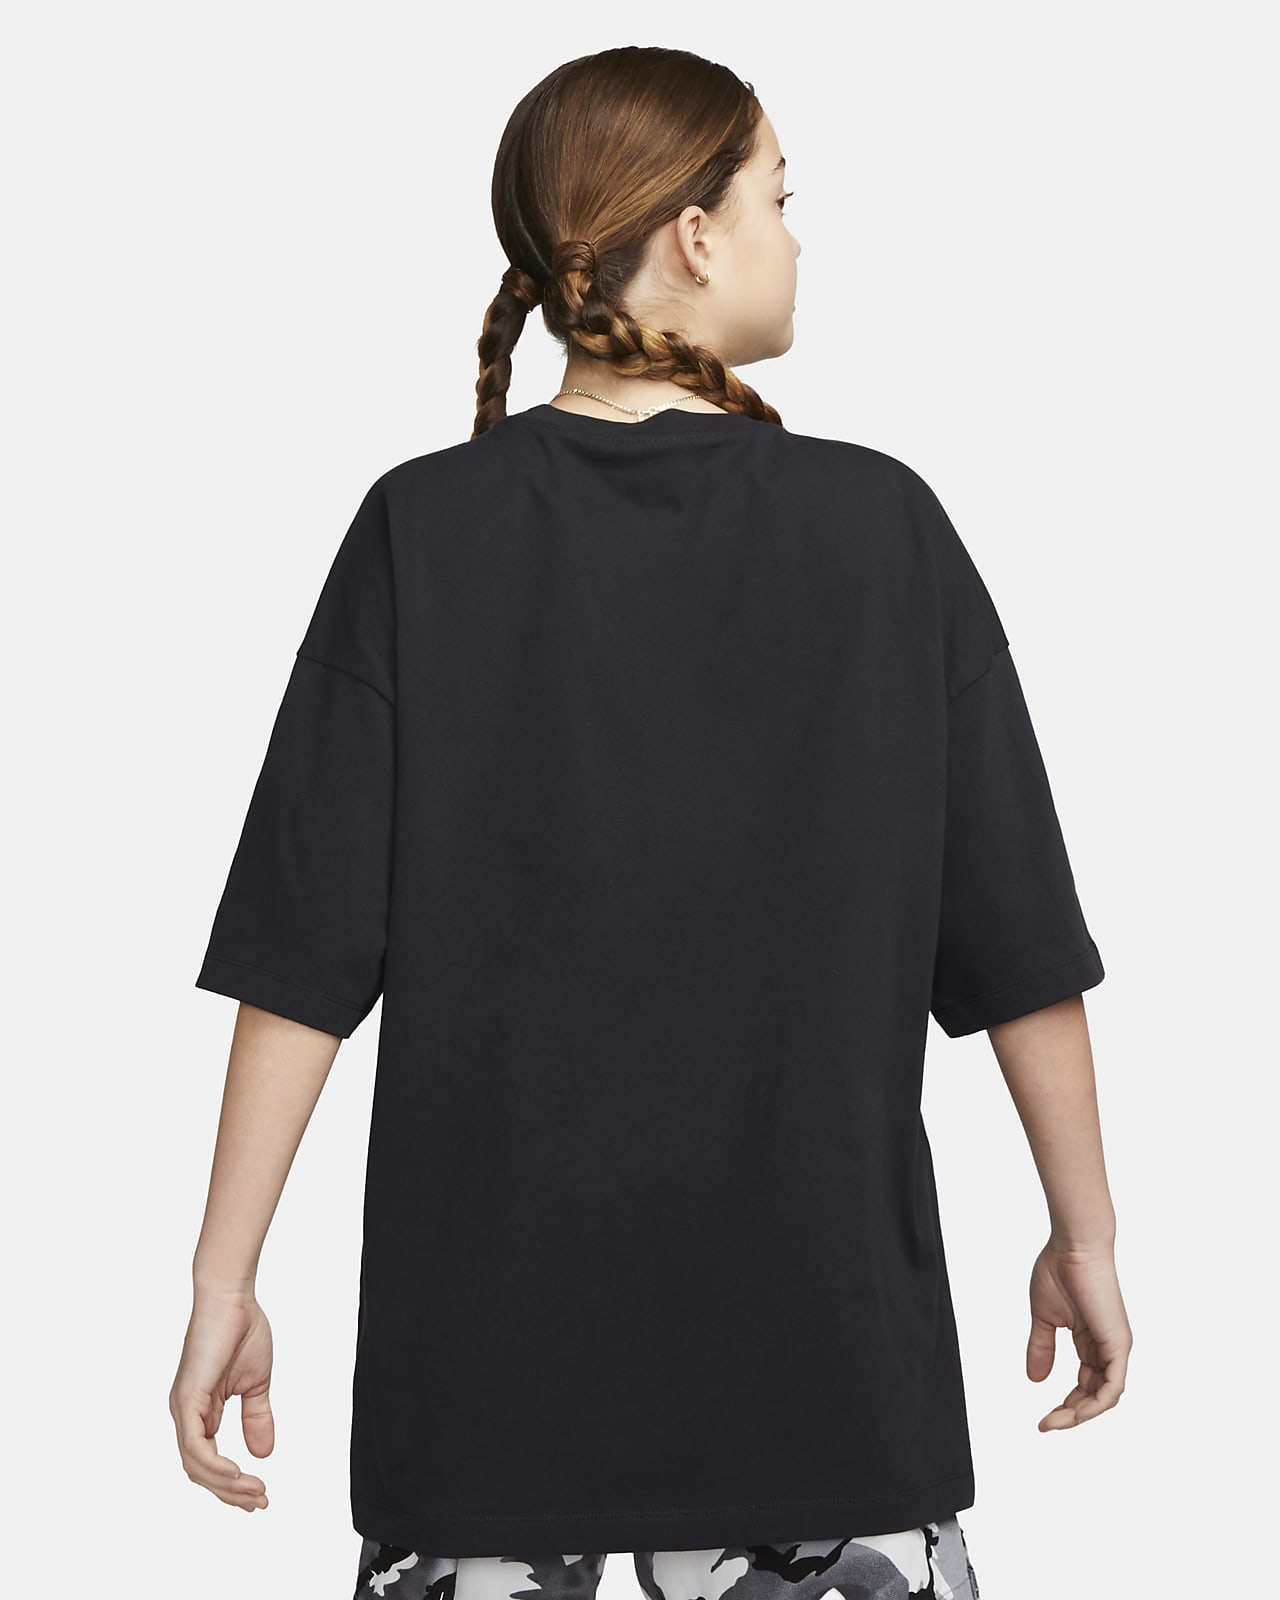 Nike Sportswear Essential Women's Oversized Short-Sleeve Top (Plus Size).  Nike IE